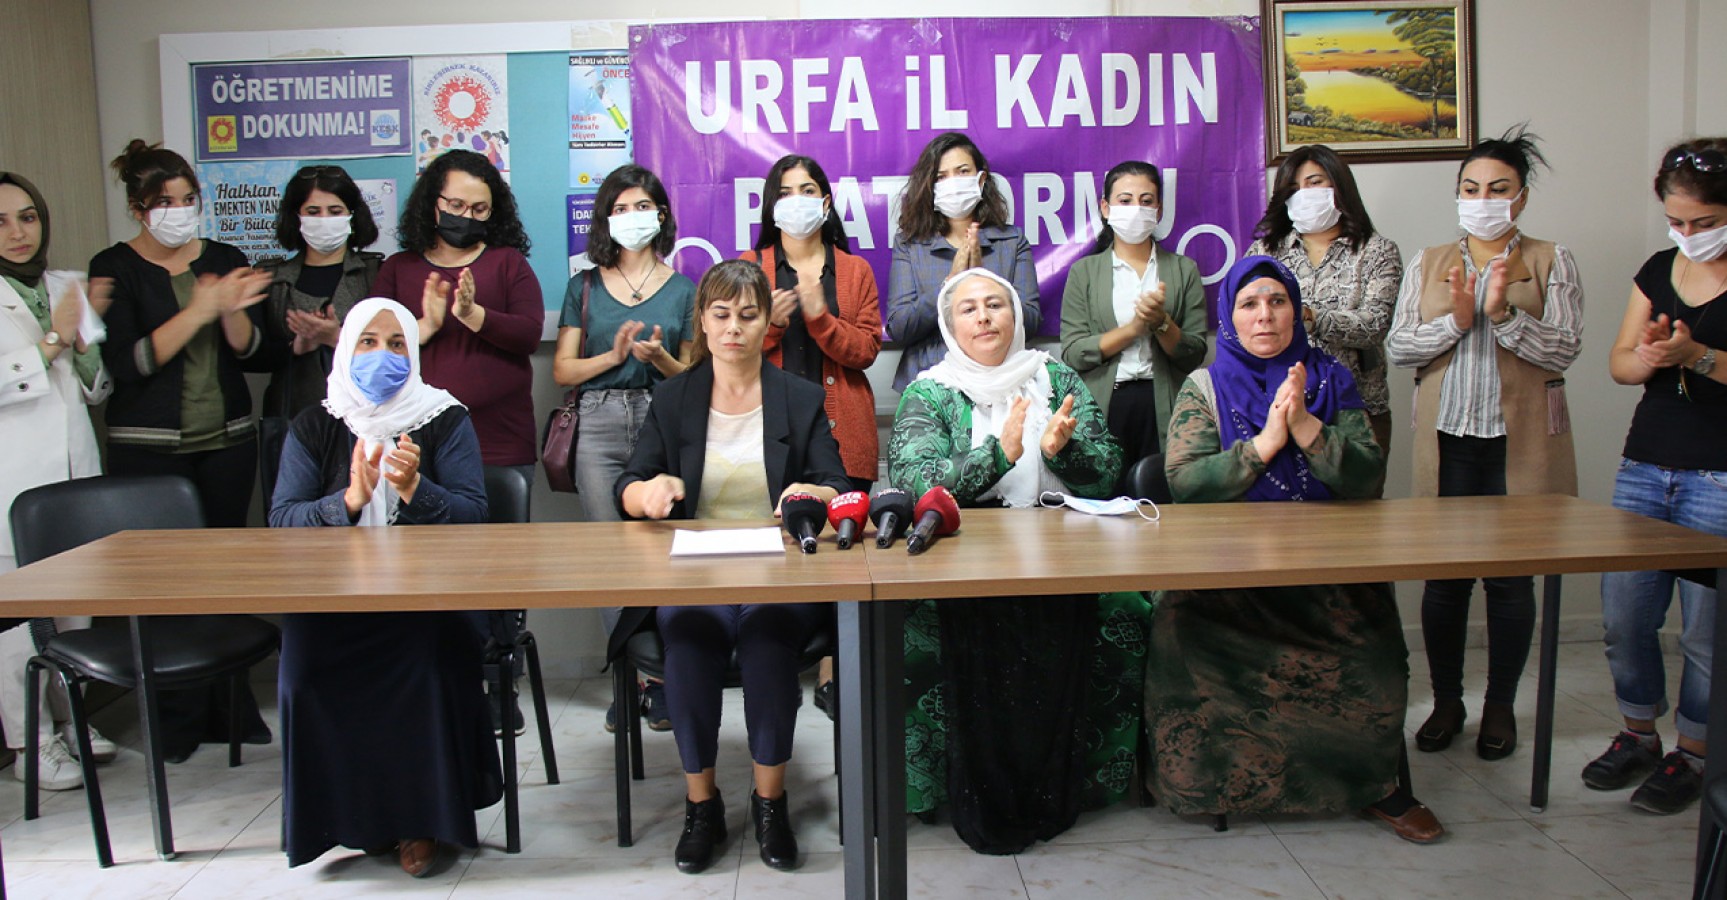 Ayşe Gökkan'a verilen hapis cezasına Urfalı kadınlardan tepki